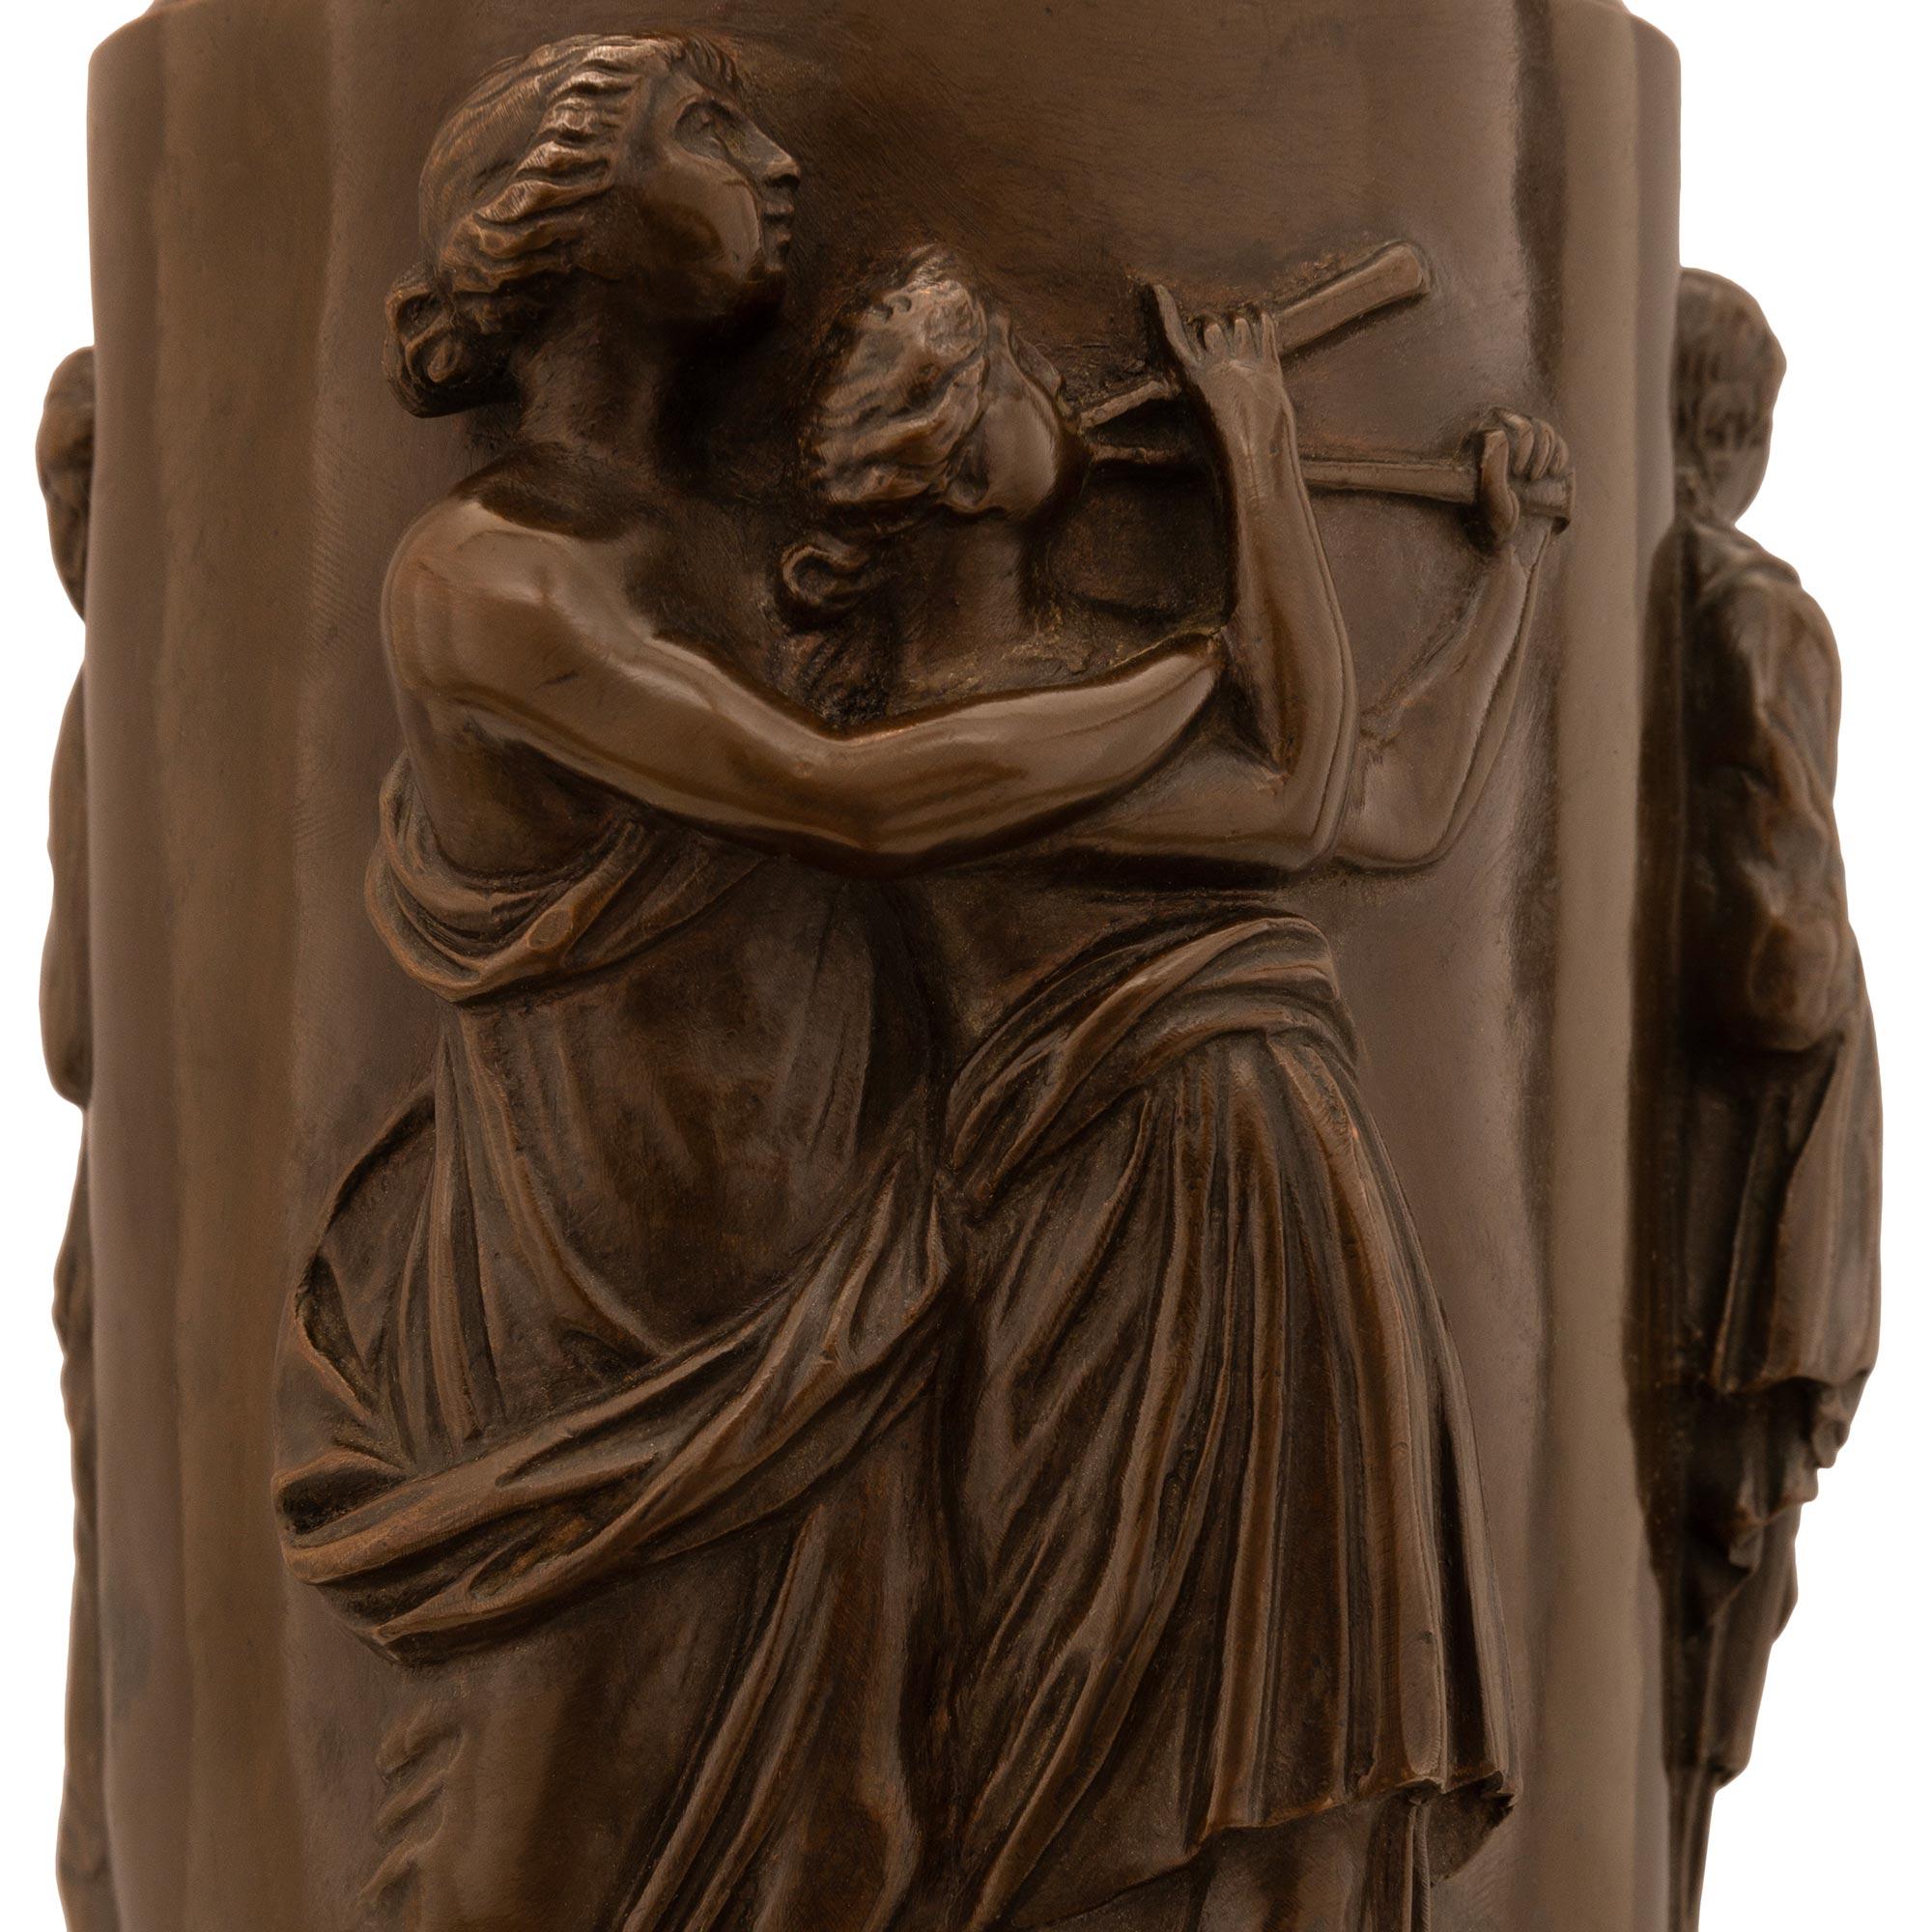 Une belle paire de lampes en bronze patiné de la période du Grand Tour, signée Barbedienne. La paire de lampes à huile originales est posée sur des bases circulaires en forme de socle, sous les bustes étonnants et de grande qualité de la déesse